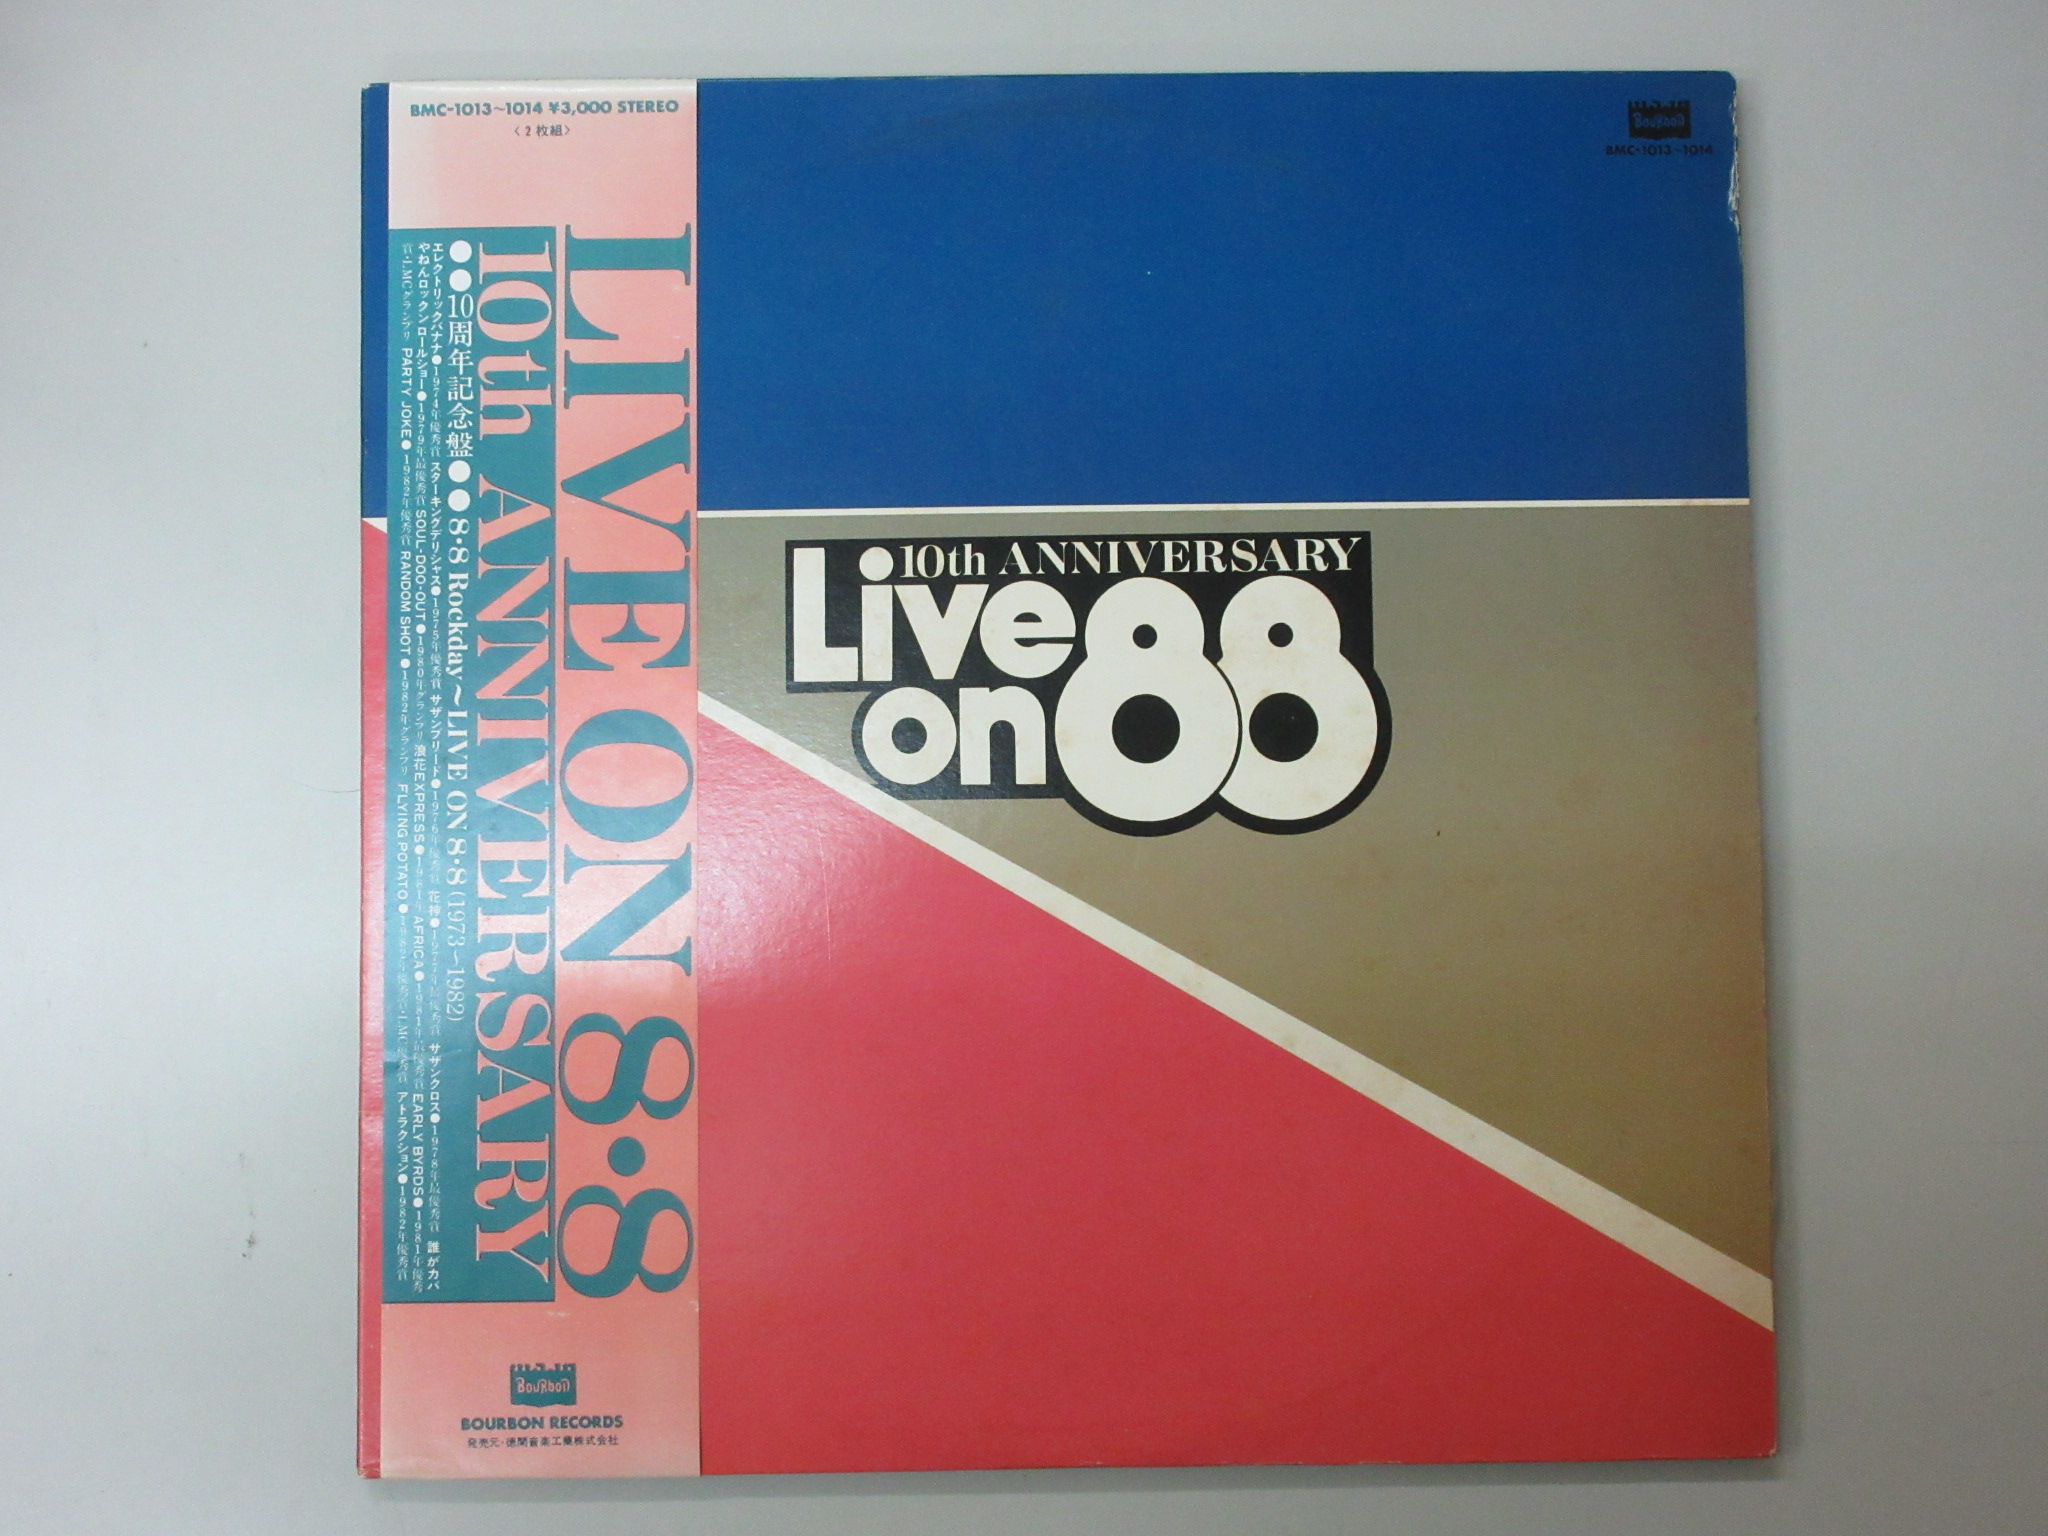 2枚組 8・8 Rockday　LIVE ON 88-10th anniversary [BNC-1013]